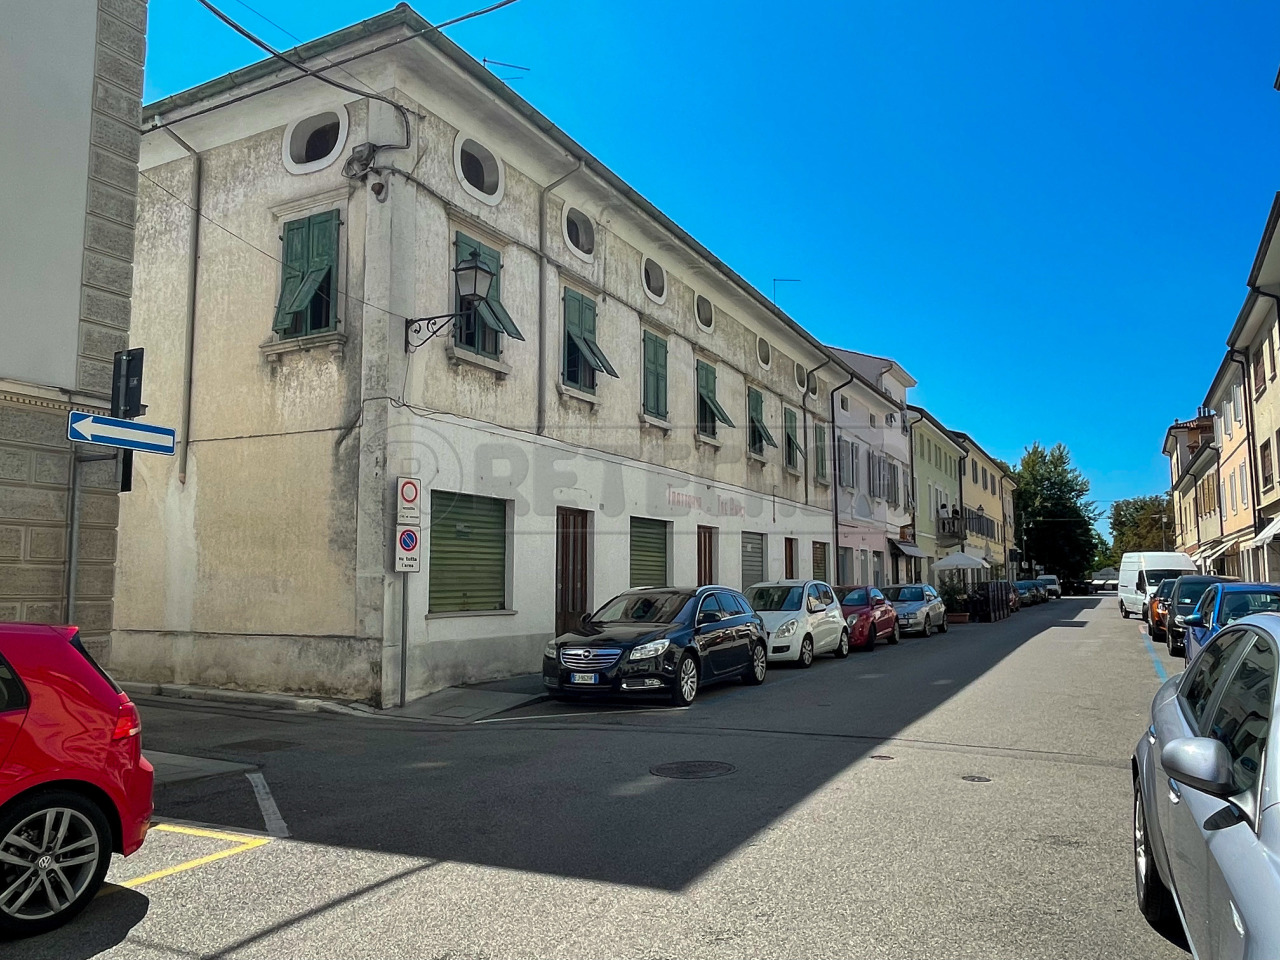 Ristorante / Pizzeria / Trattoria in vendita a Gradisca d'Isonzo, 1 locali, prezzo € 368.000 | CambioCasa.it